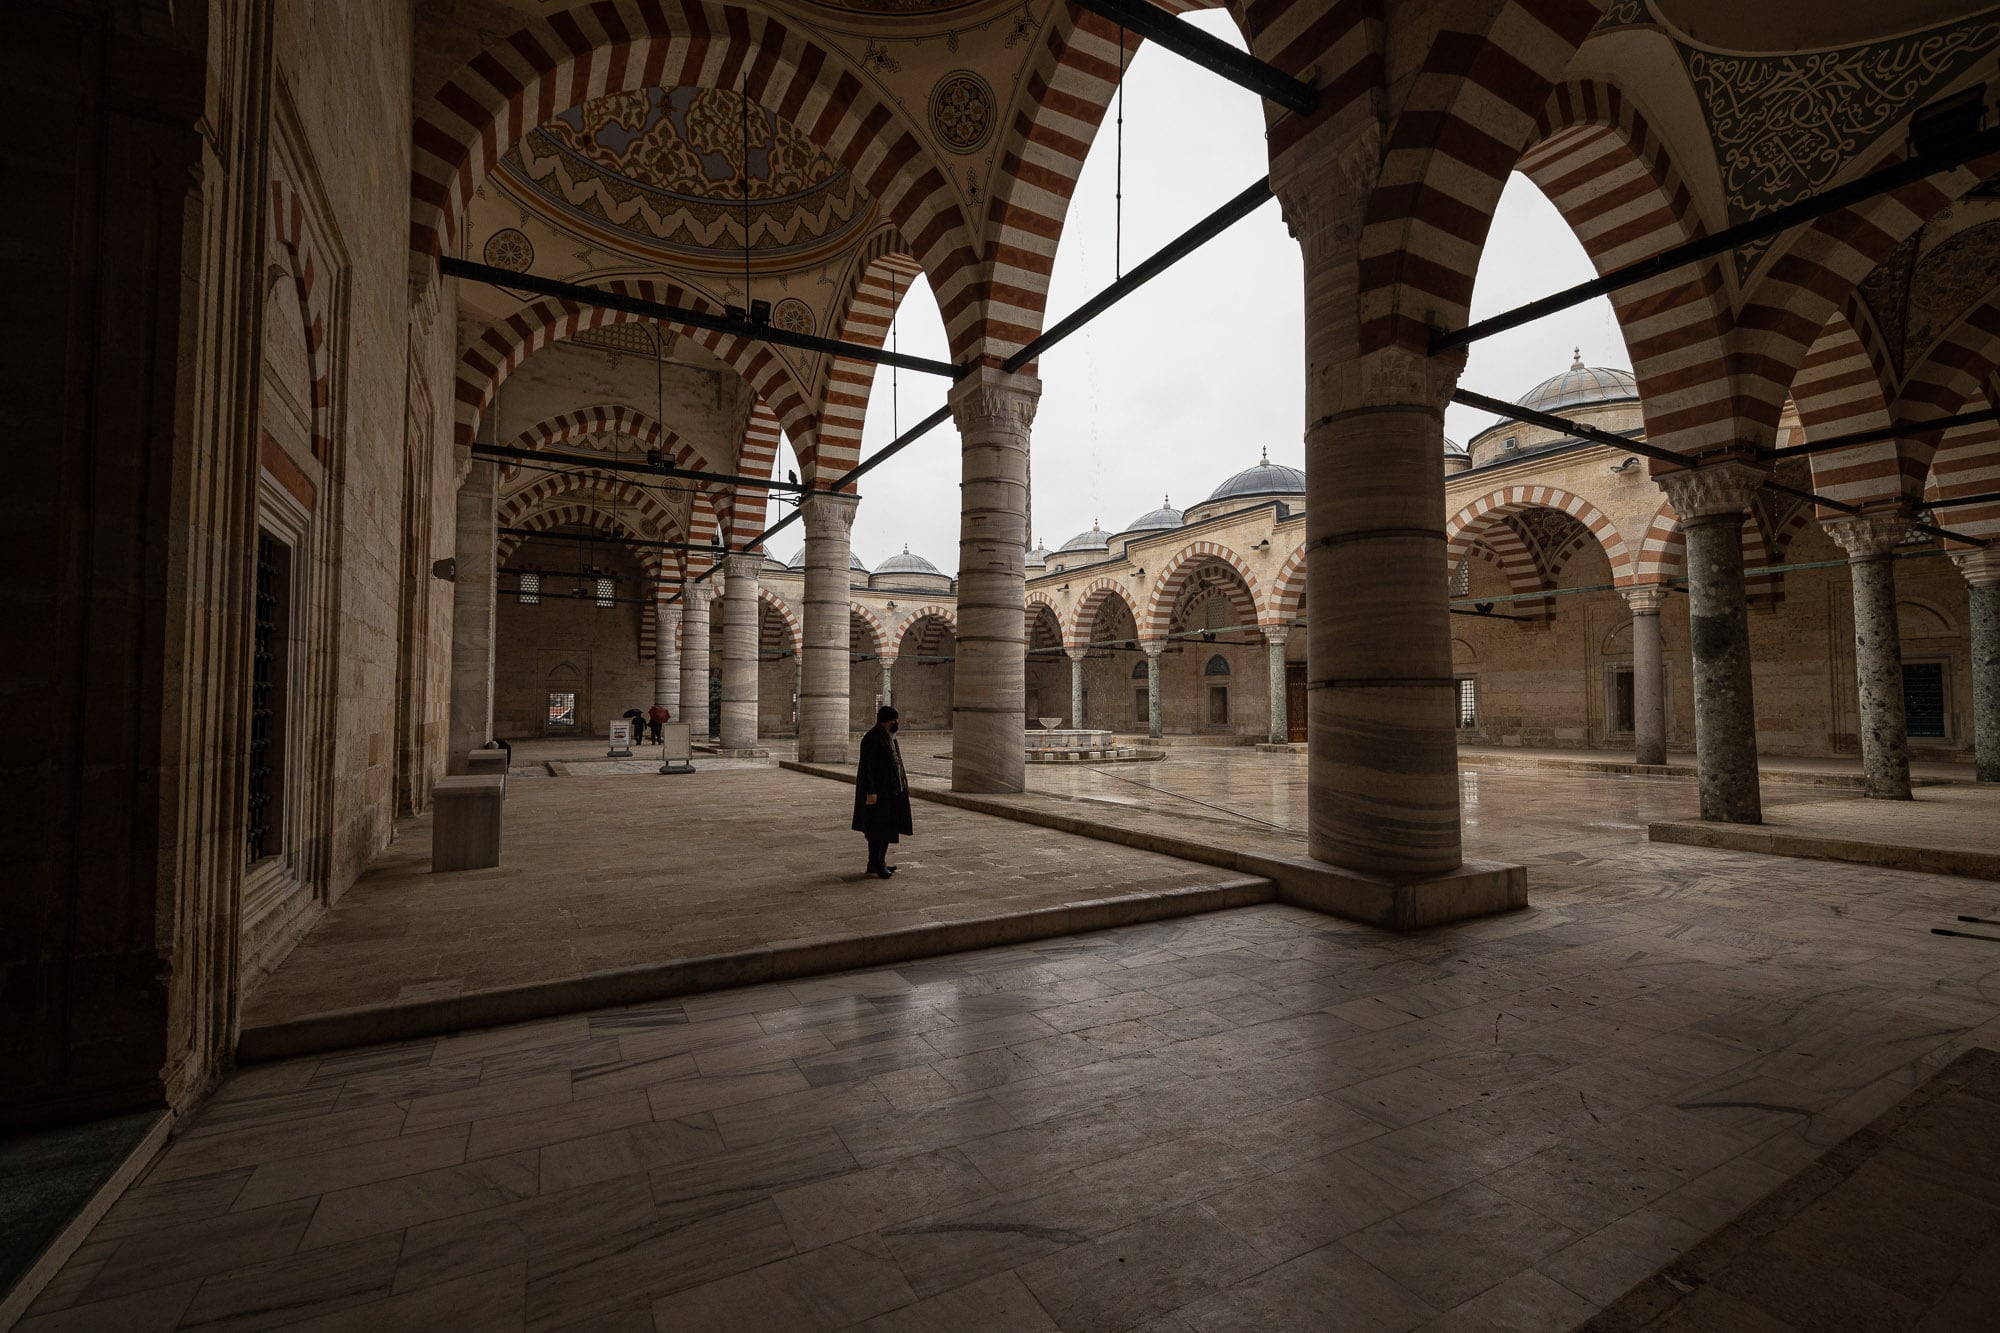 courtyard of the Üç Şerefeli Mosque of Edirne